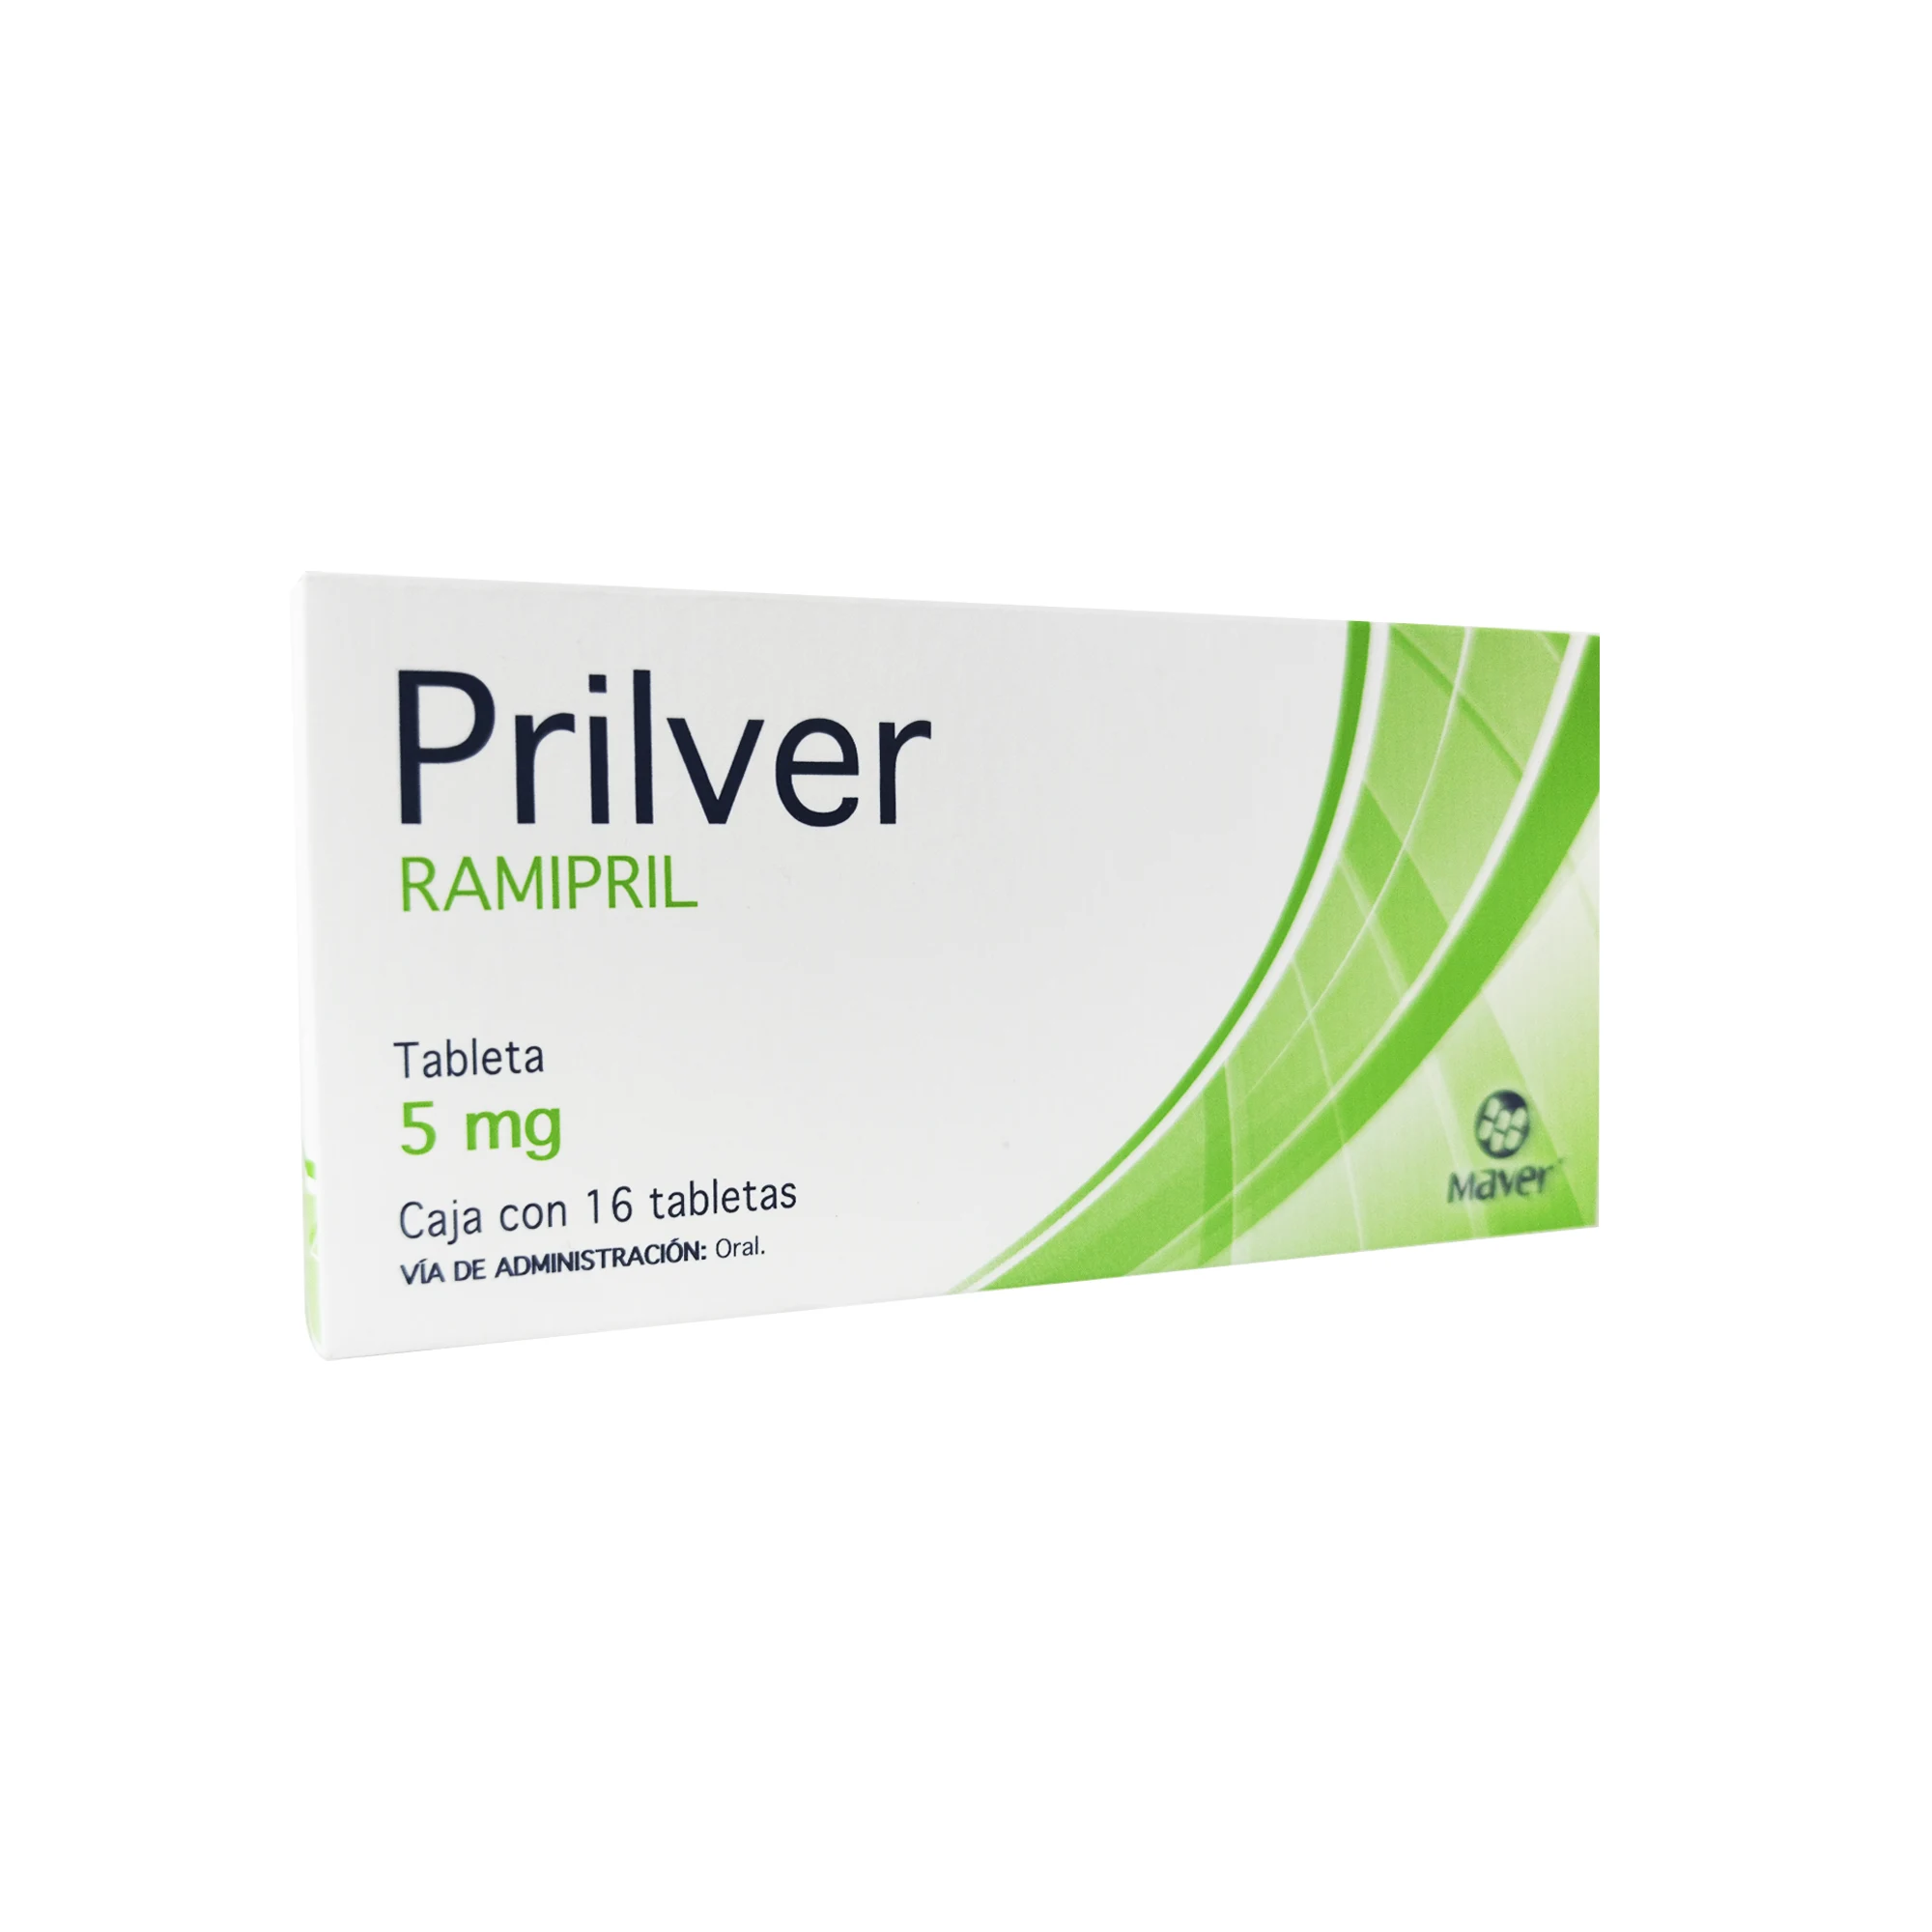 7502009744341 1 prilver ramipril 5 mg tableta 16 tableta(s)